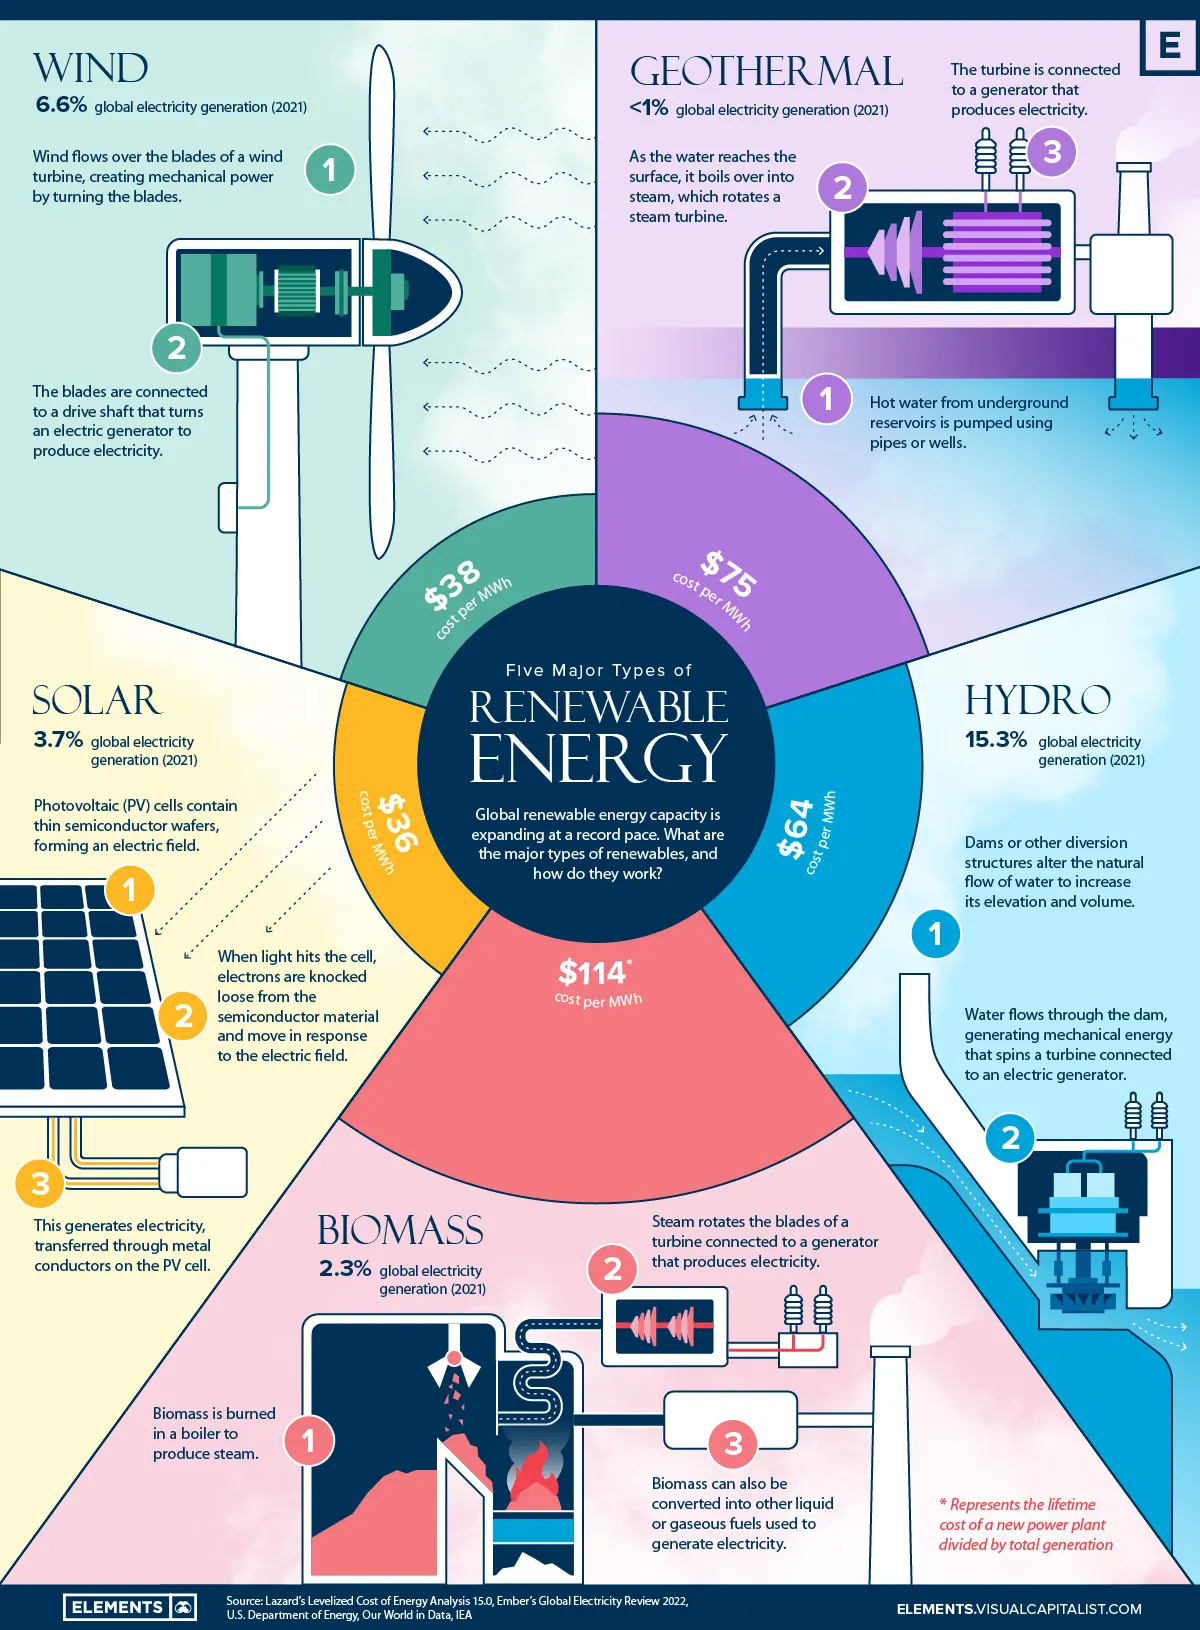 Quais são os cinco principais tipos de energia renovável?
